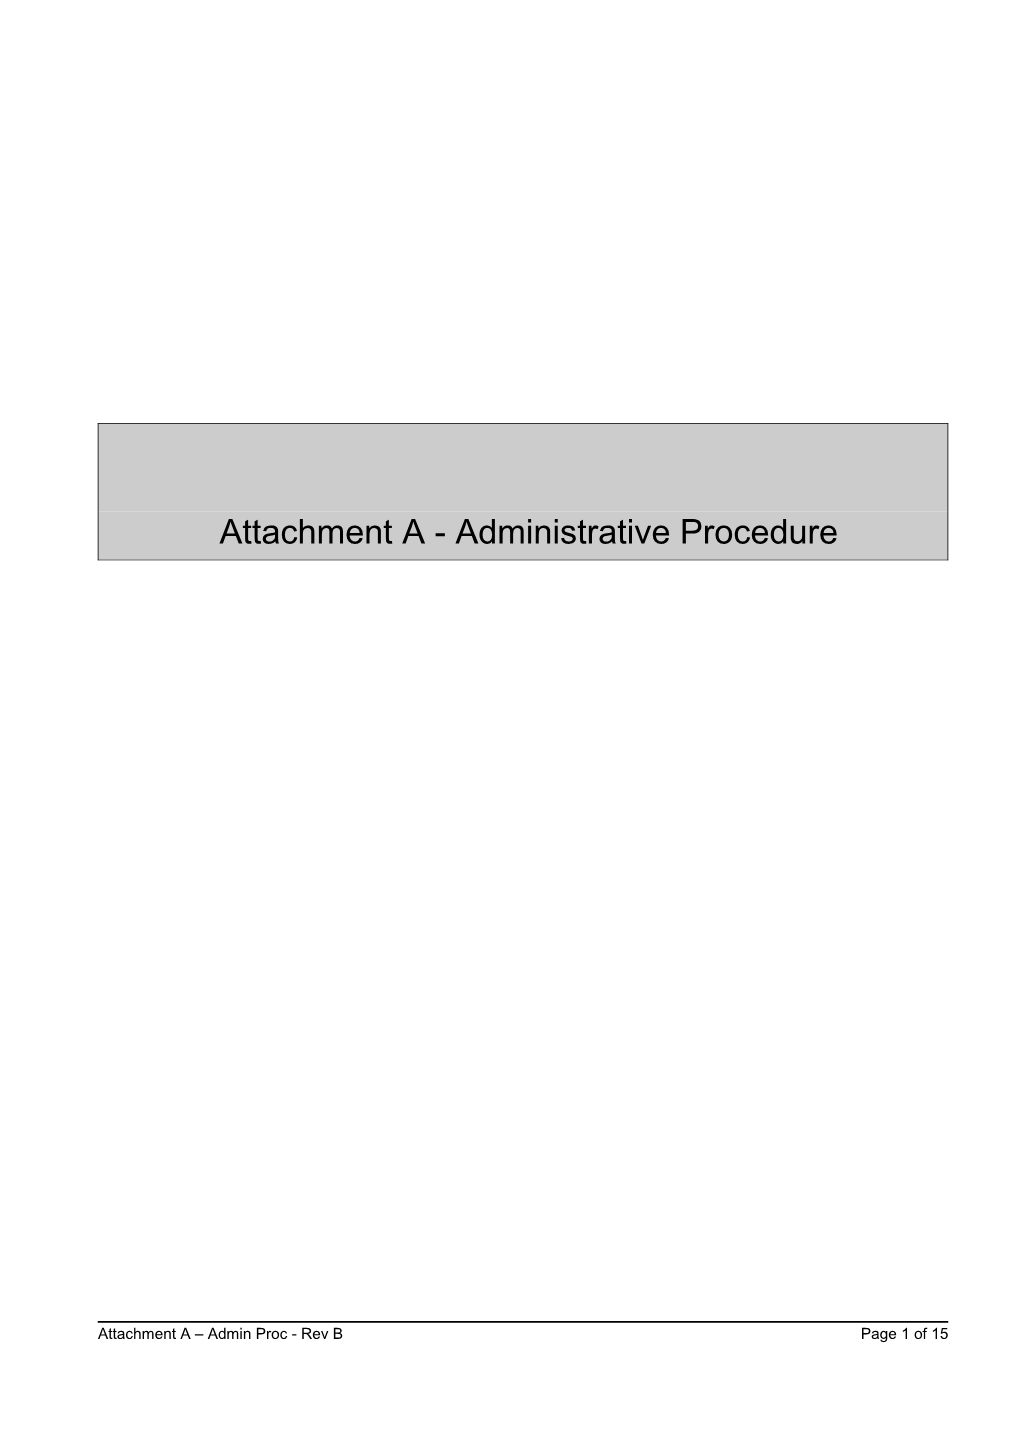 Attachment a - Administrative Procedure